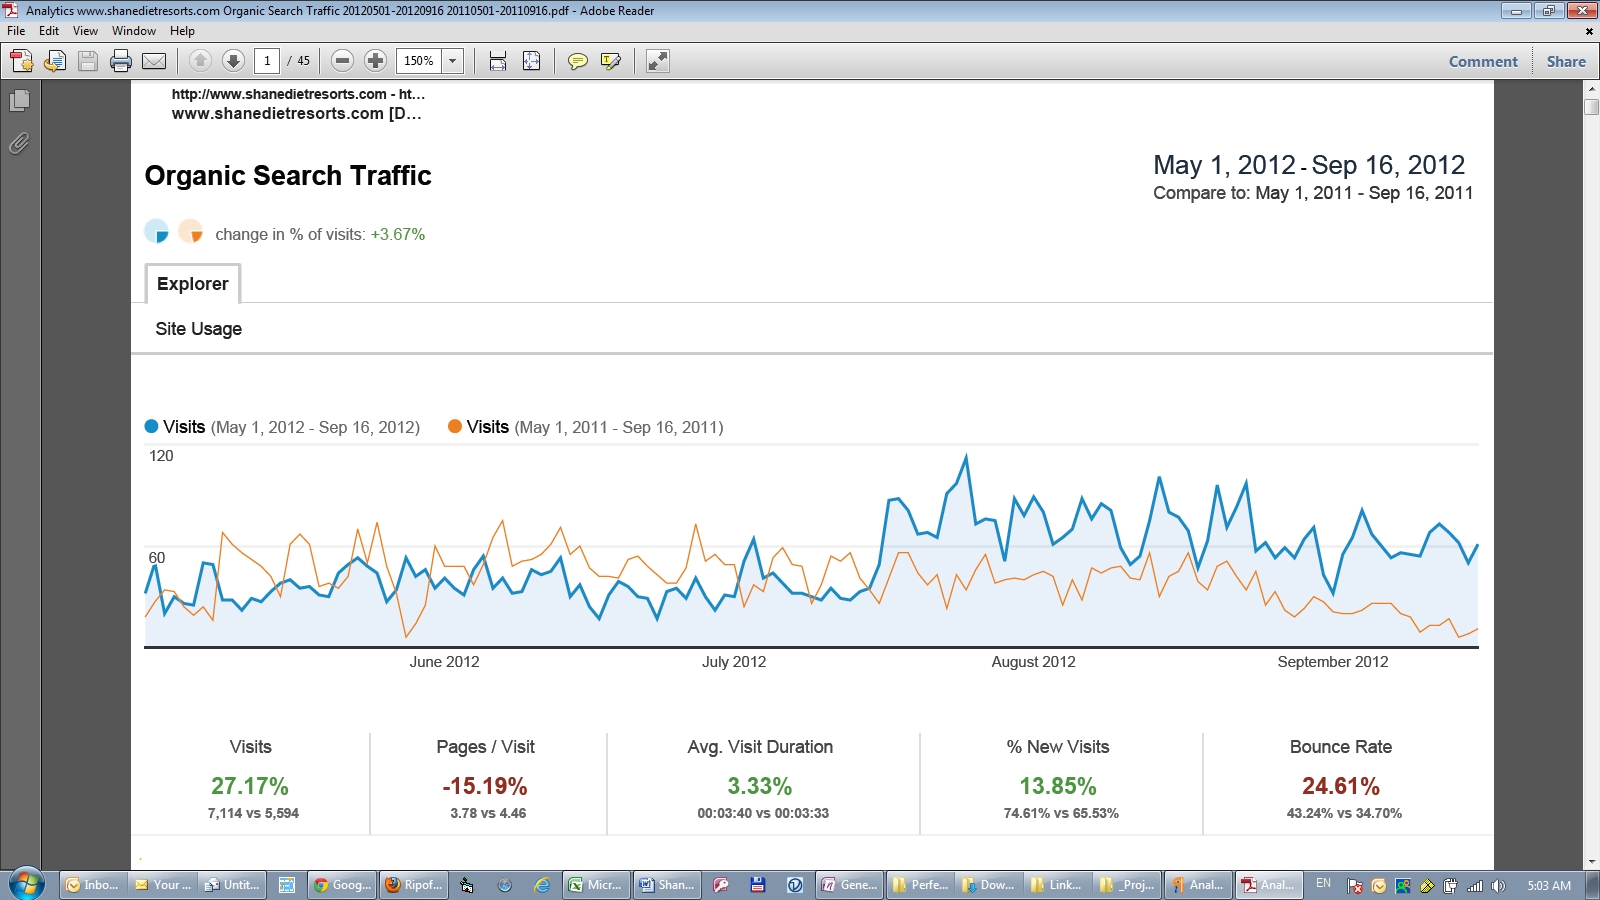 Organic Search Engine Visitor Traffic Comparison 2012 vs 2011